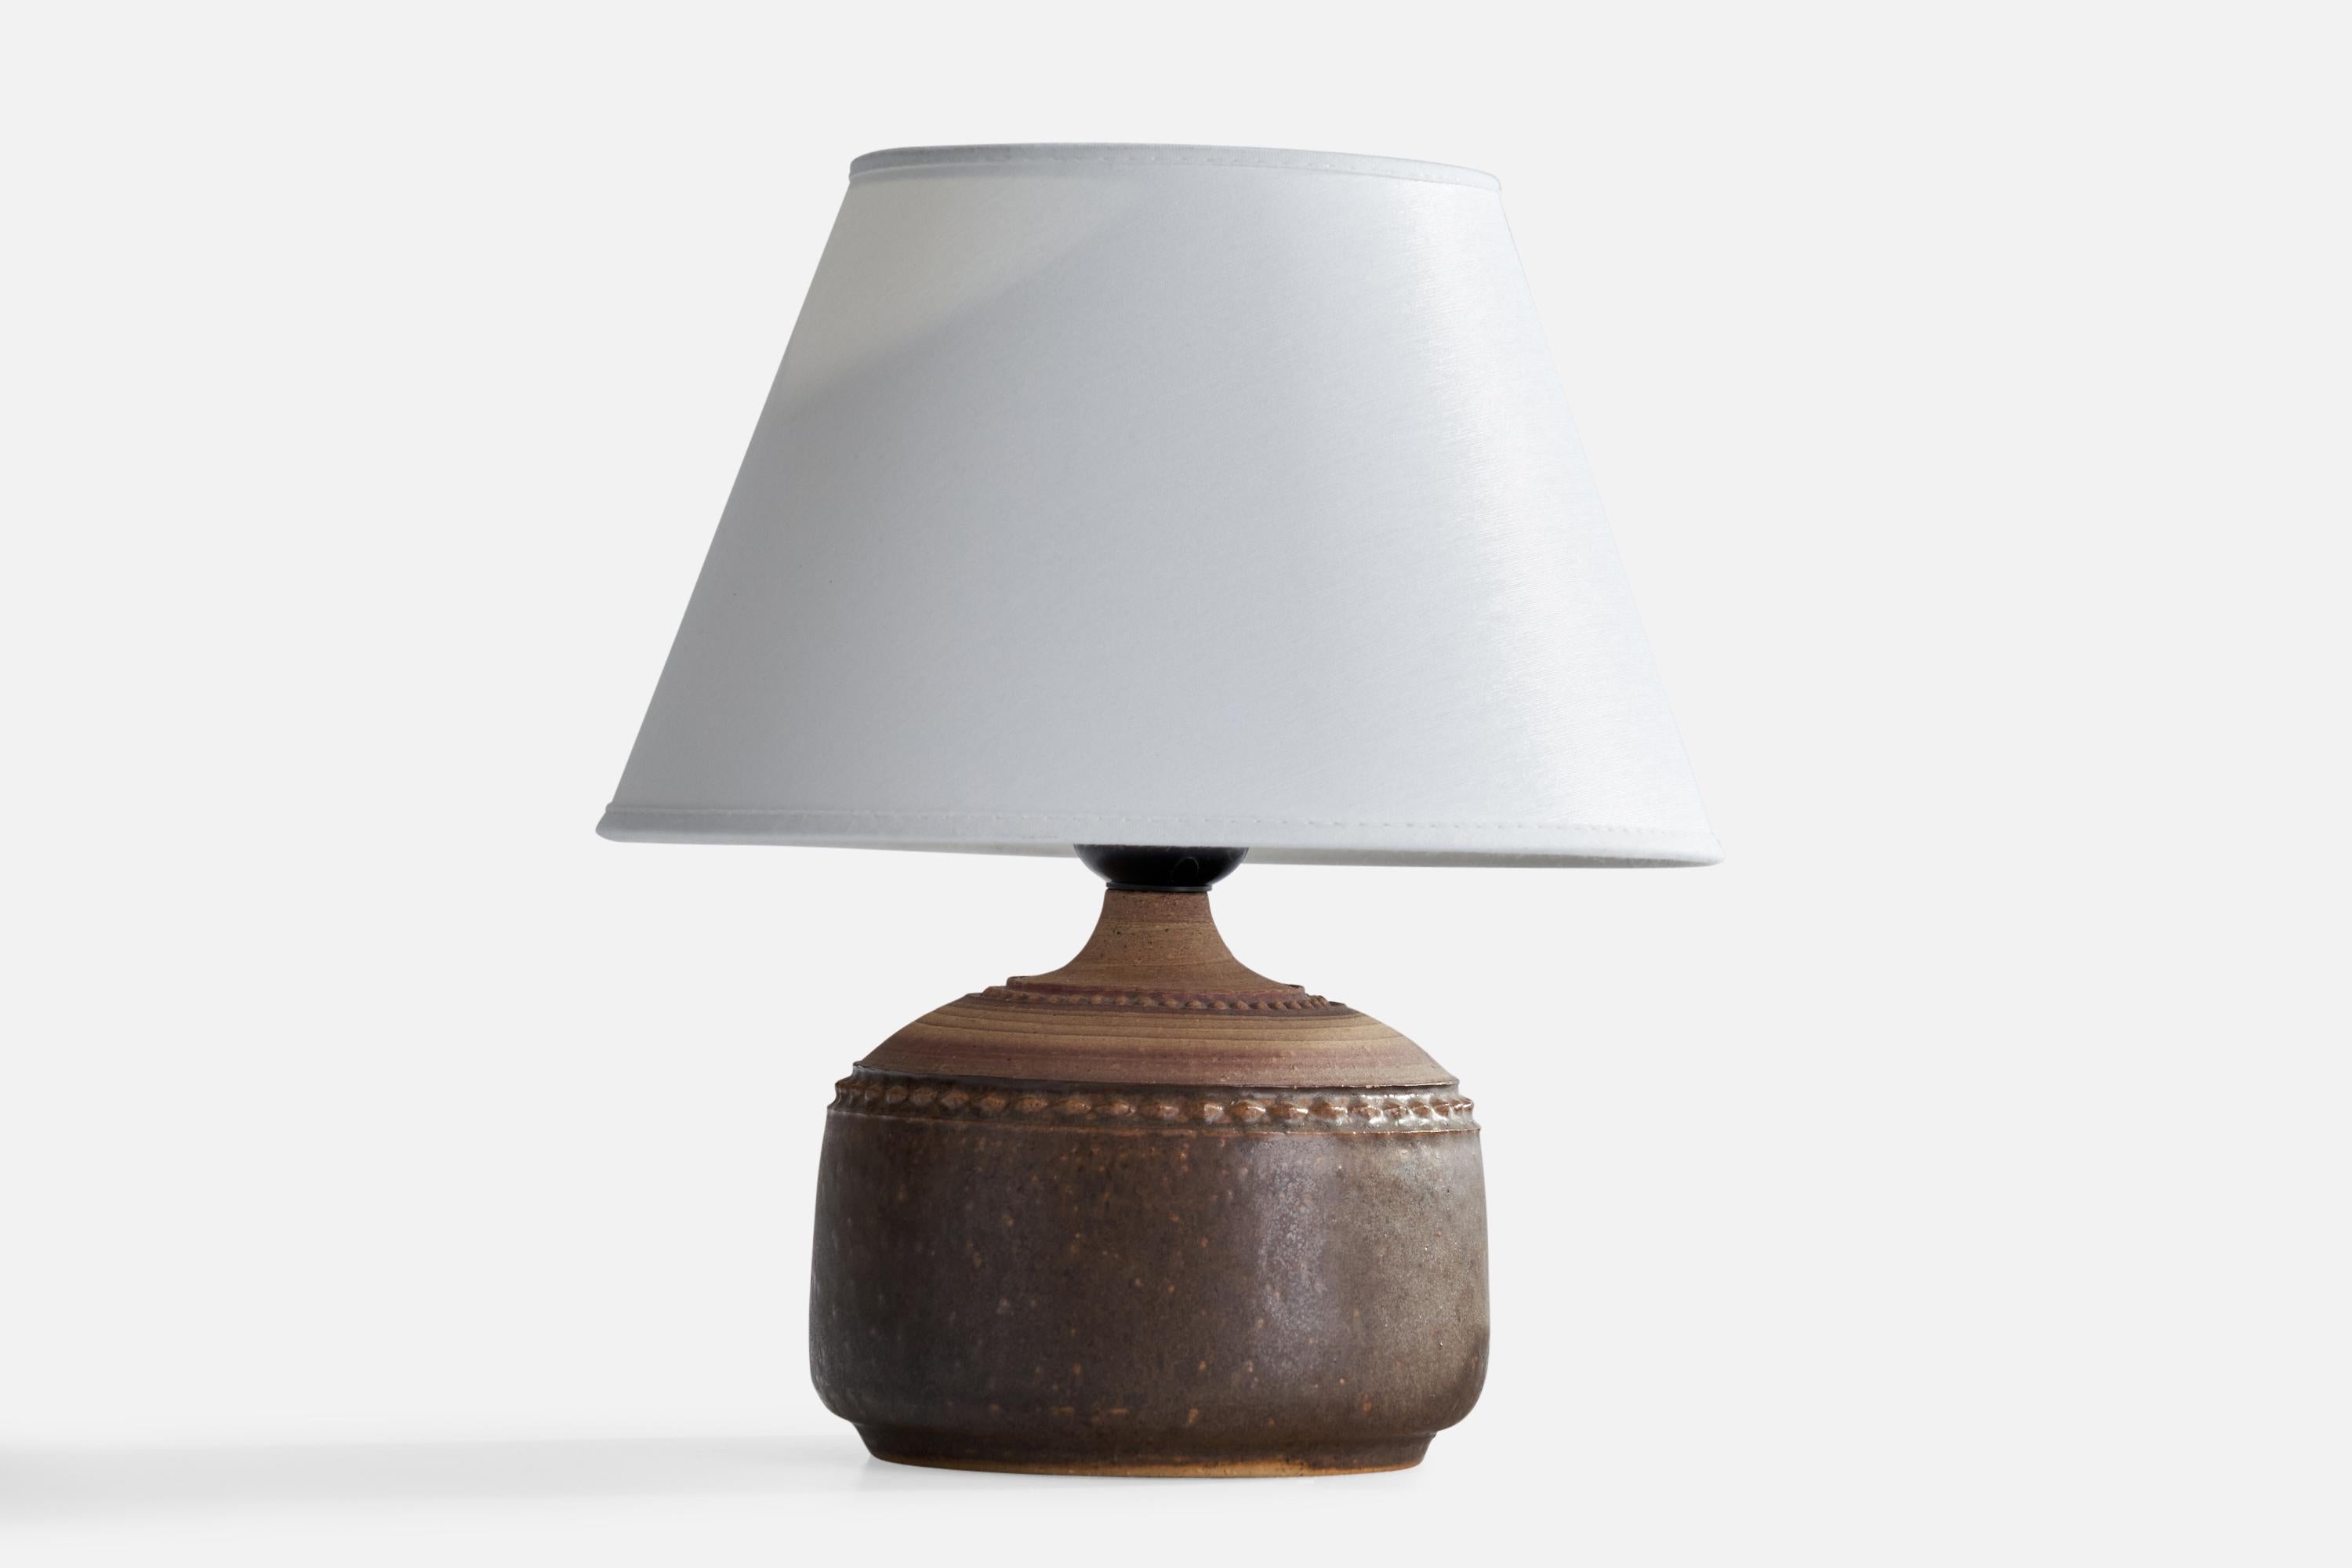 Tischlampe aus braun glasiertem Steingut, entworfen und hergestellt in Schweden, 1960er Jahre.

Abmessungen der Lampe (Zoll): 6,5